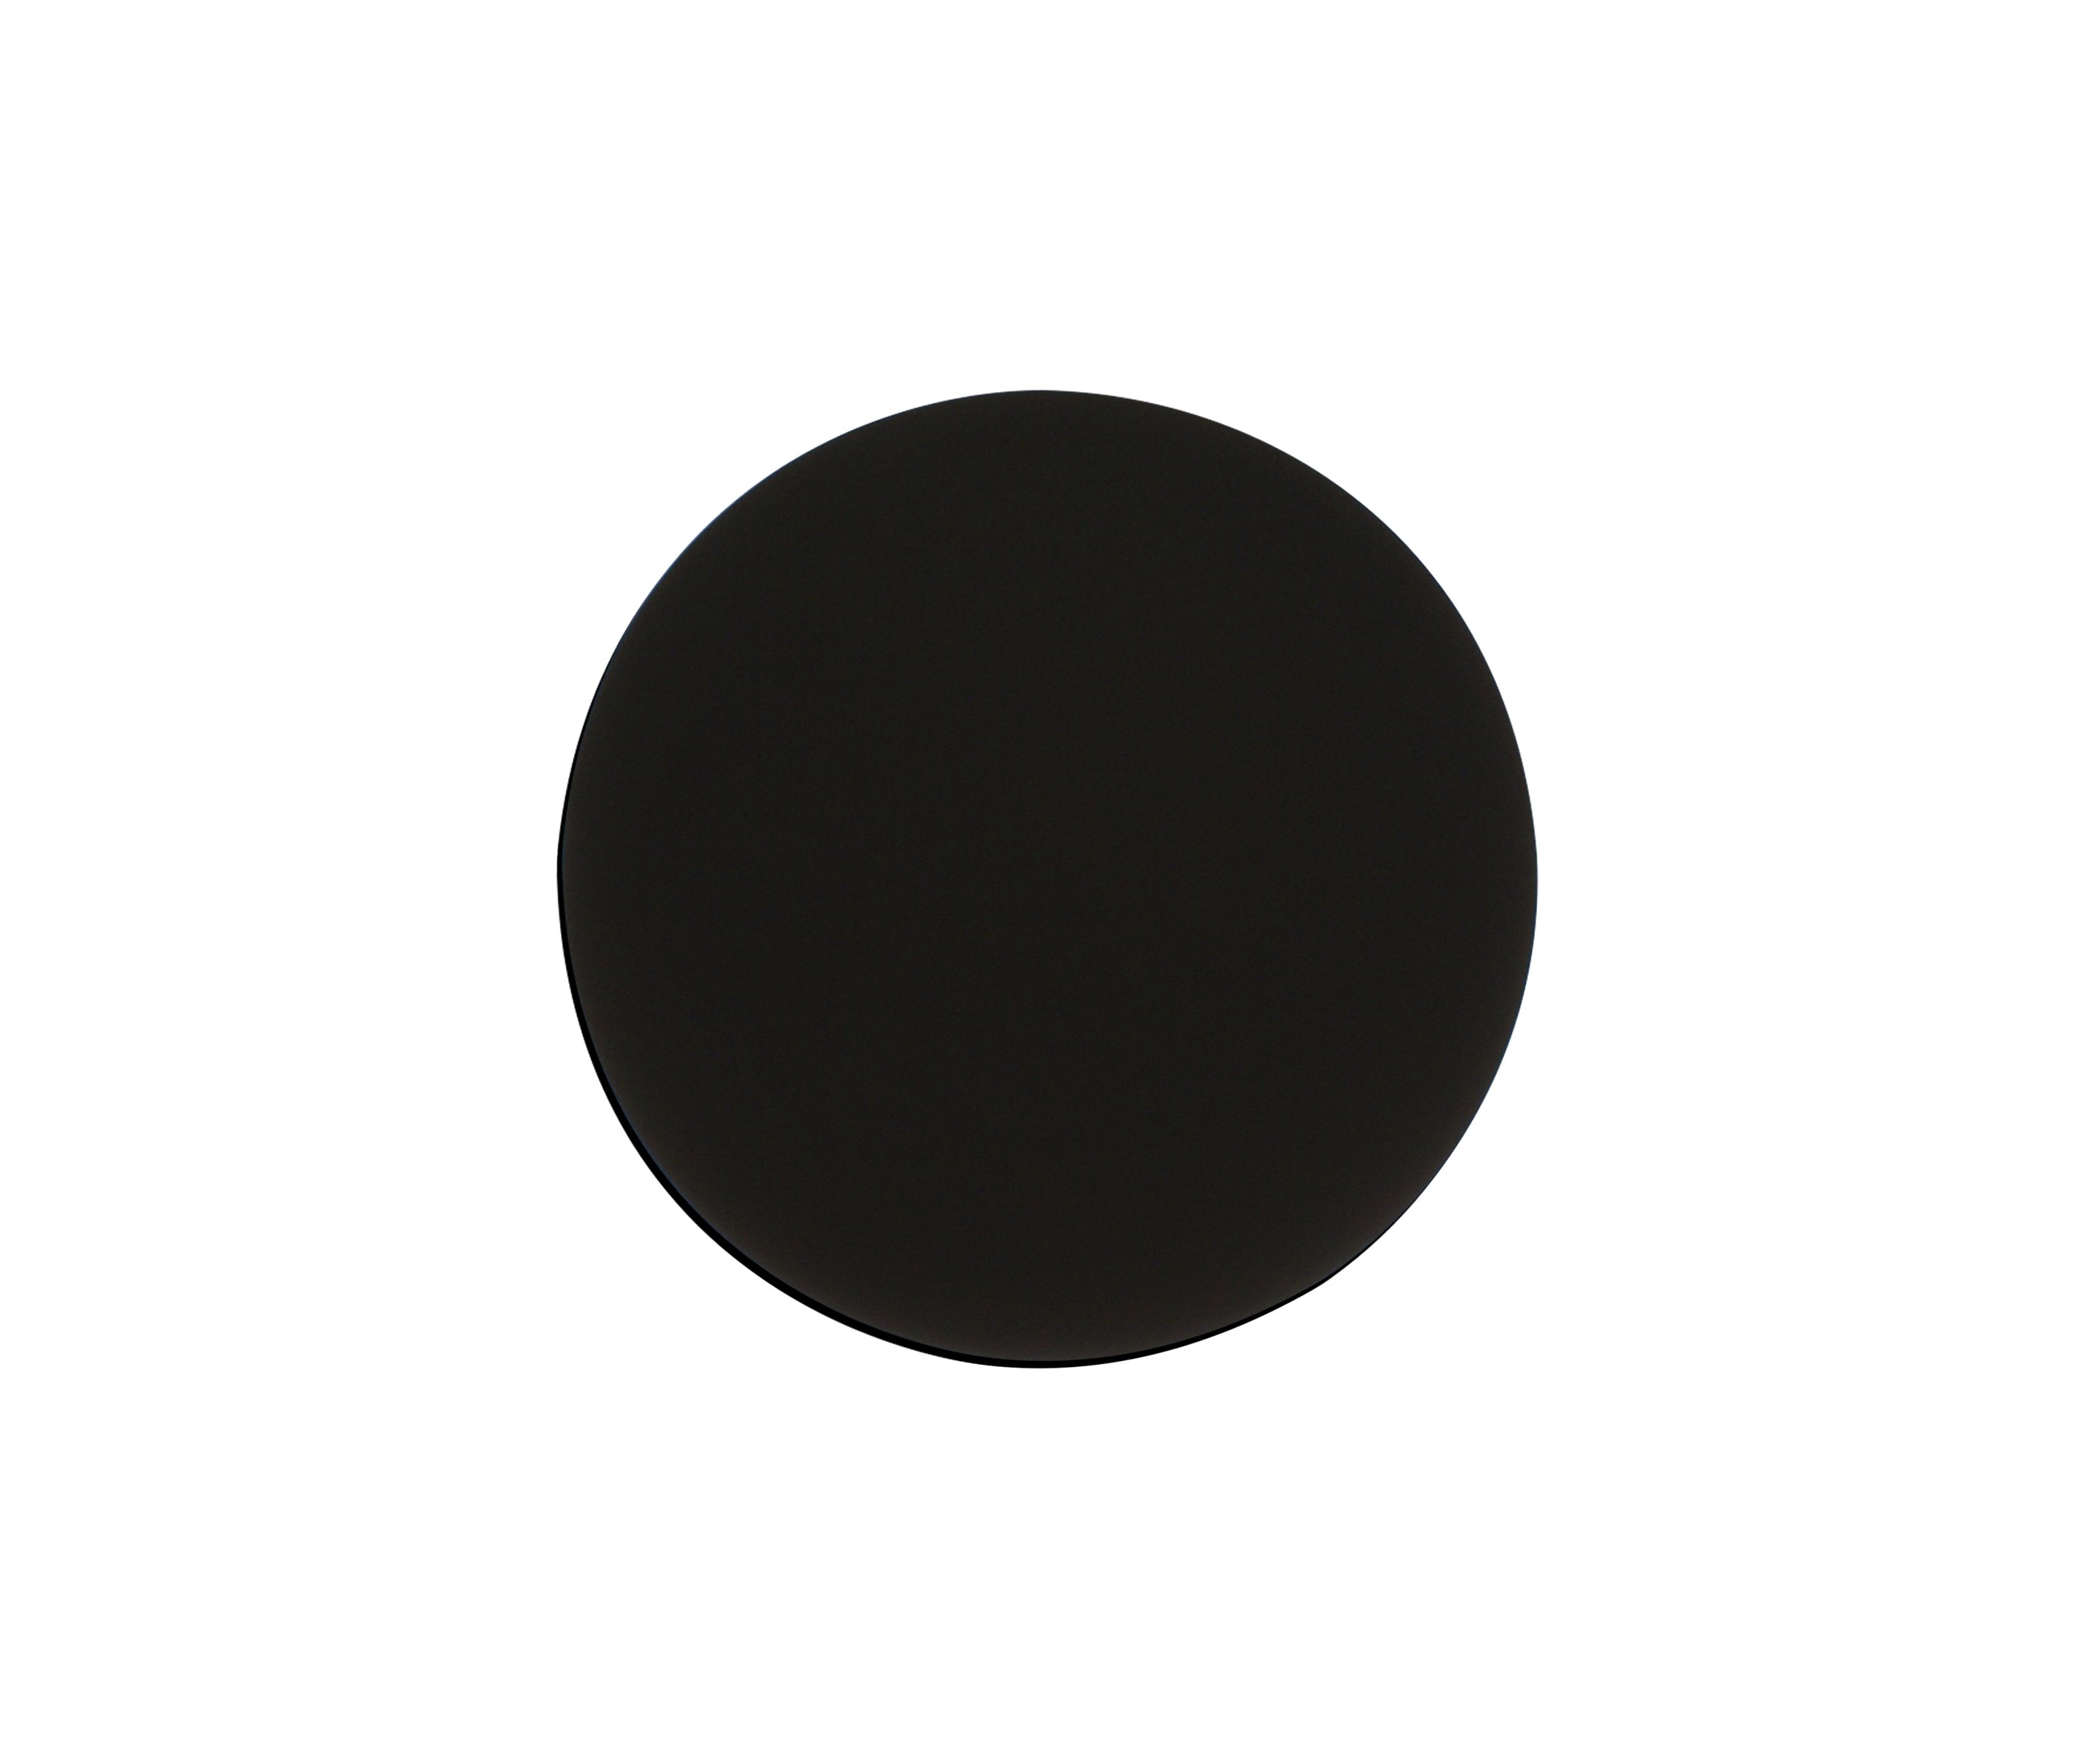 Знак точка в круге. Бра затмение 2201,19. Светильник kink Light затмение 2200,19 черный. Черный круг. Черные кружочки.